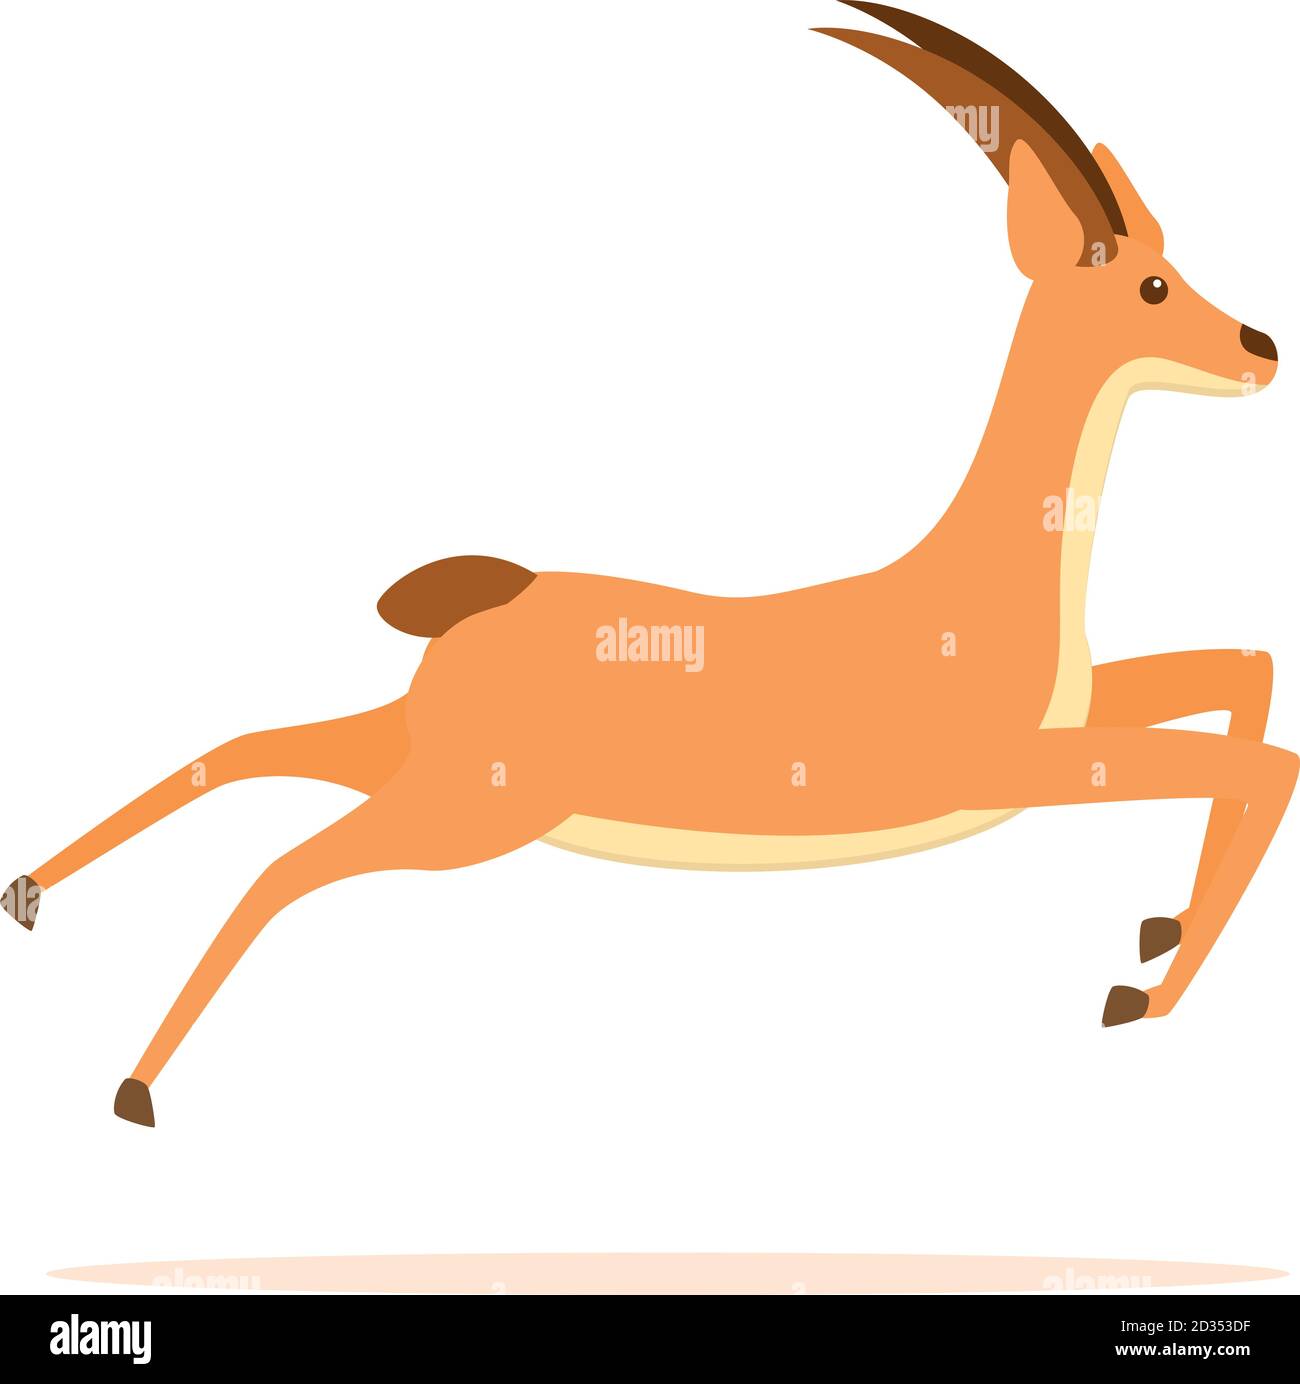 Icône de gazelle sauvage. Dessin animé de l'icône de vecteur gazelle sauvage pour le web design isolé sur fond blanc Illustration de Vecteur